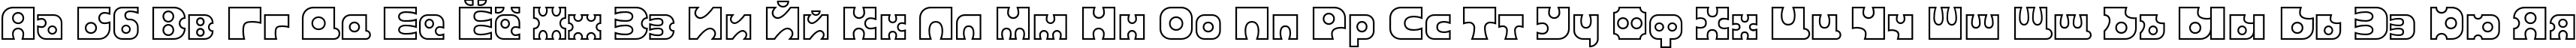 Пример написания русского алфавита шрифтом Joker Outline